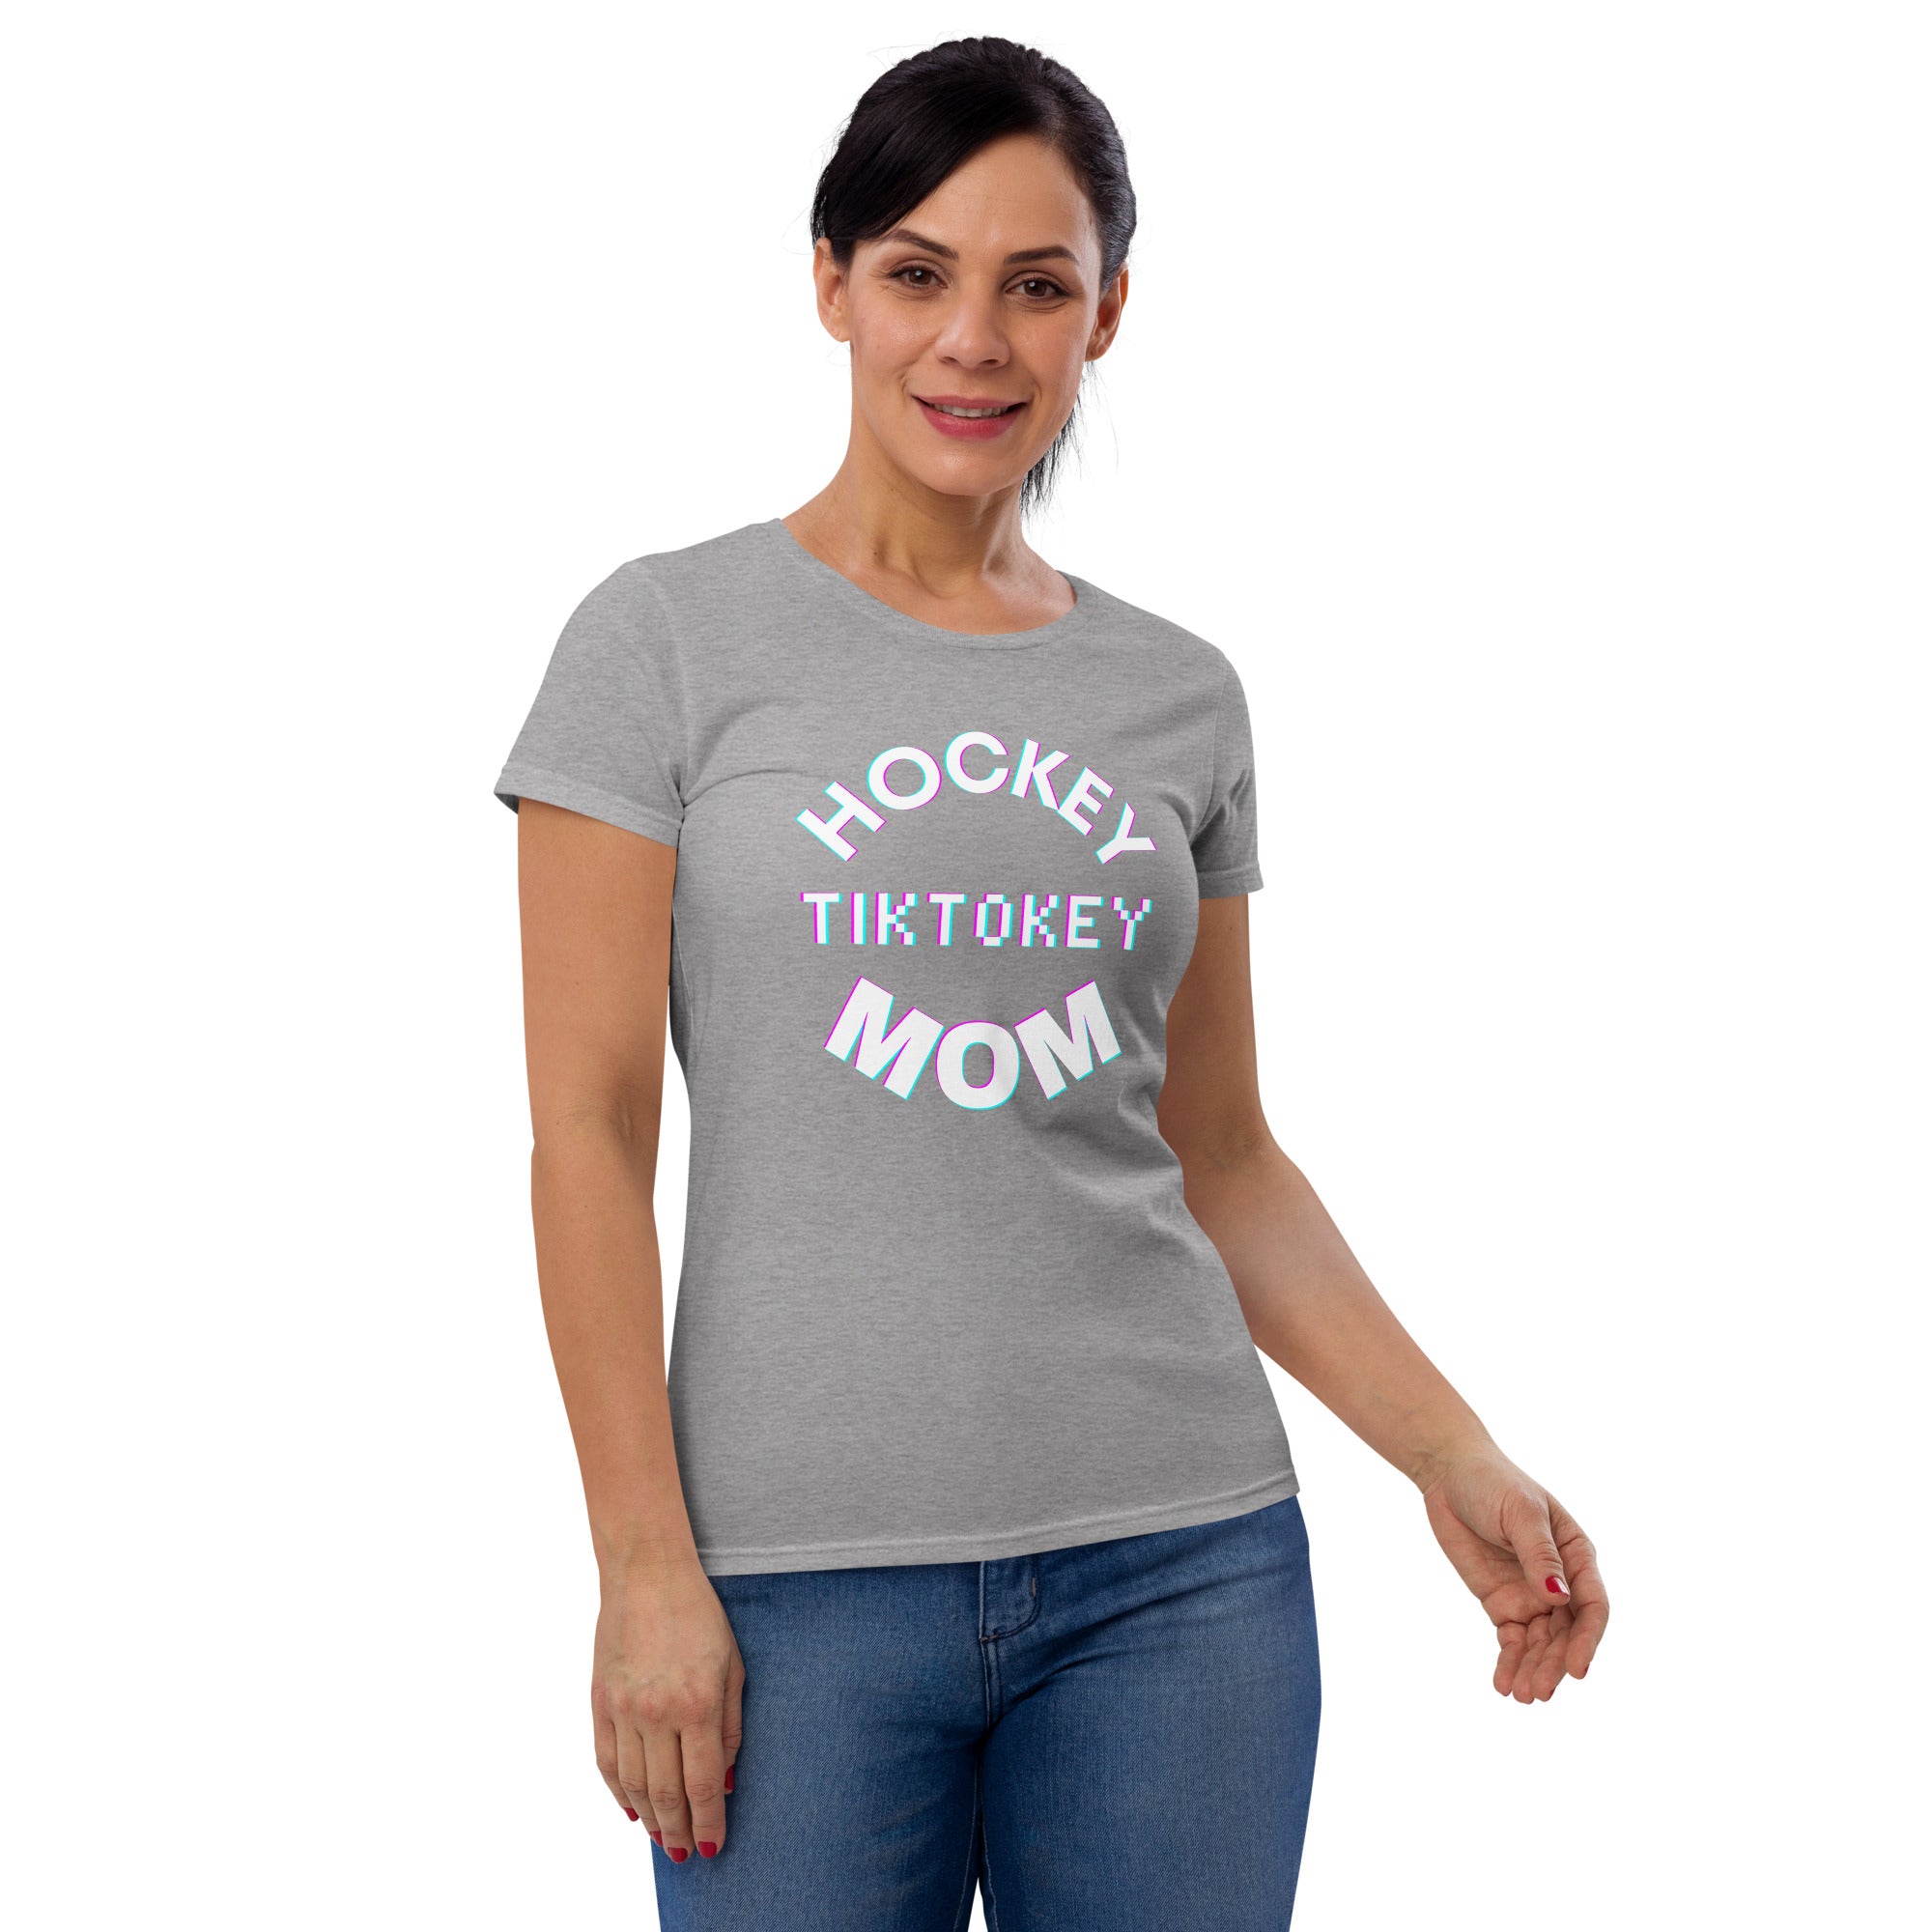 Hockey Tiktokey Women's Fitted T-Shirt